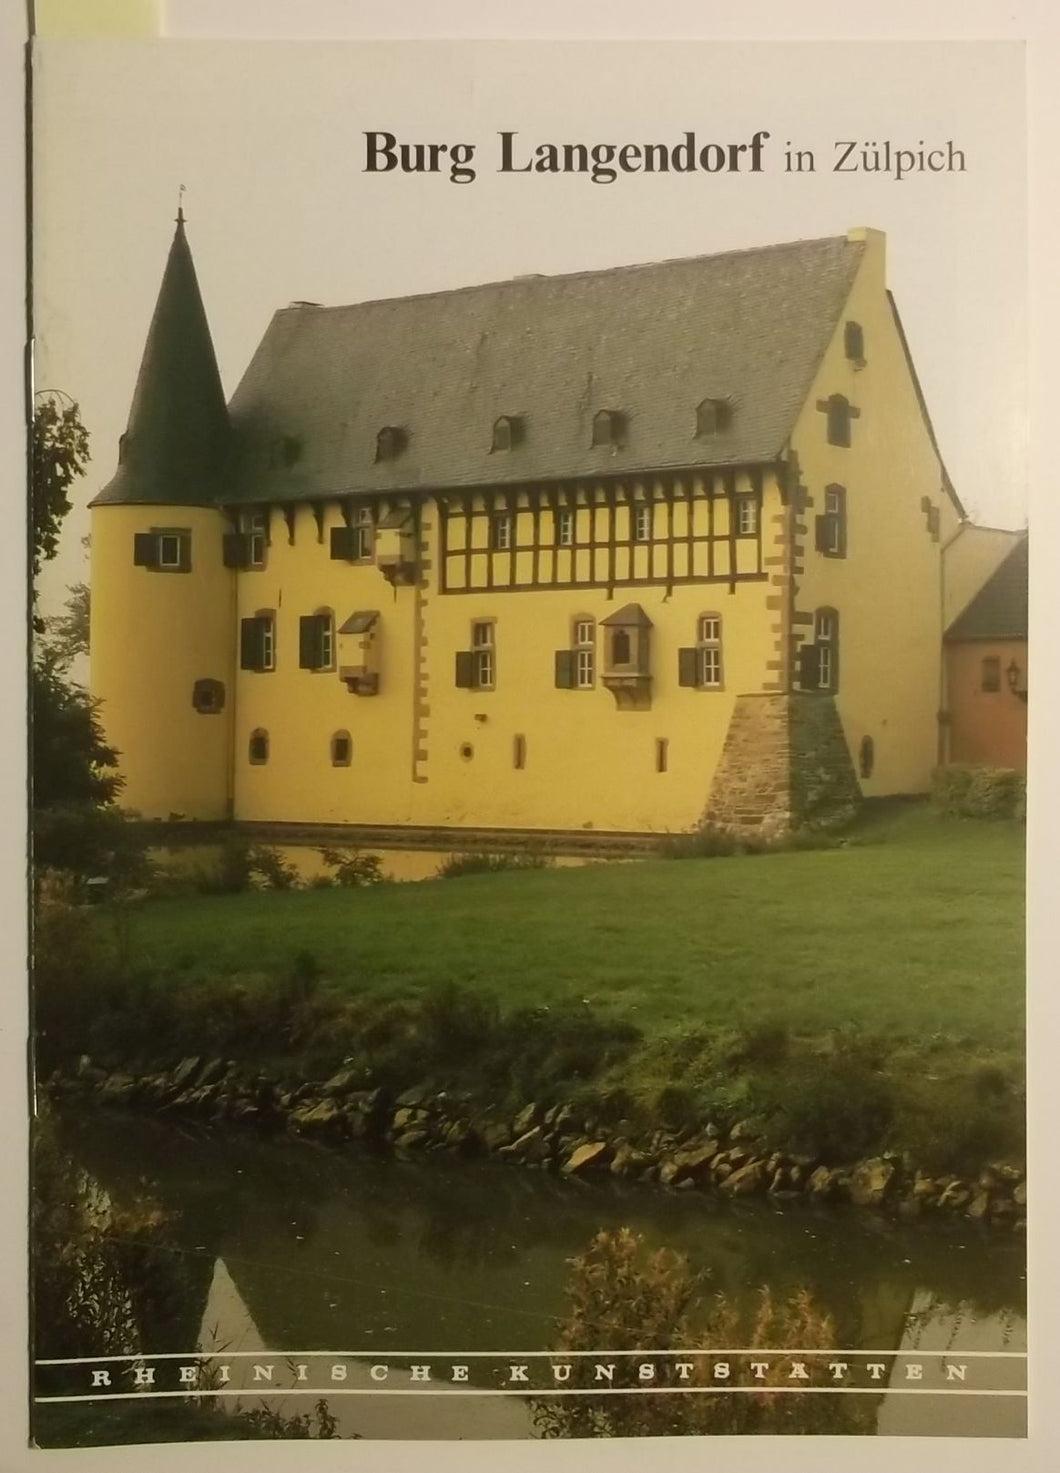 Rheinische Kunststätten Heft 398 - Burg Langendorf in Zülpich (1994)